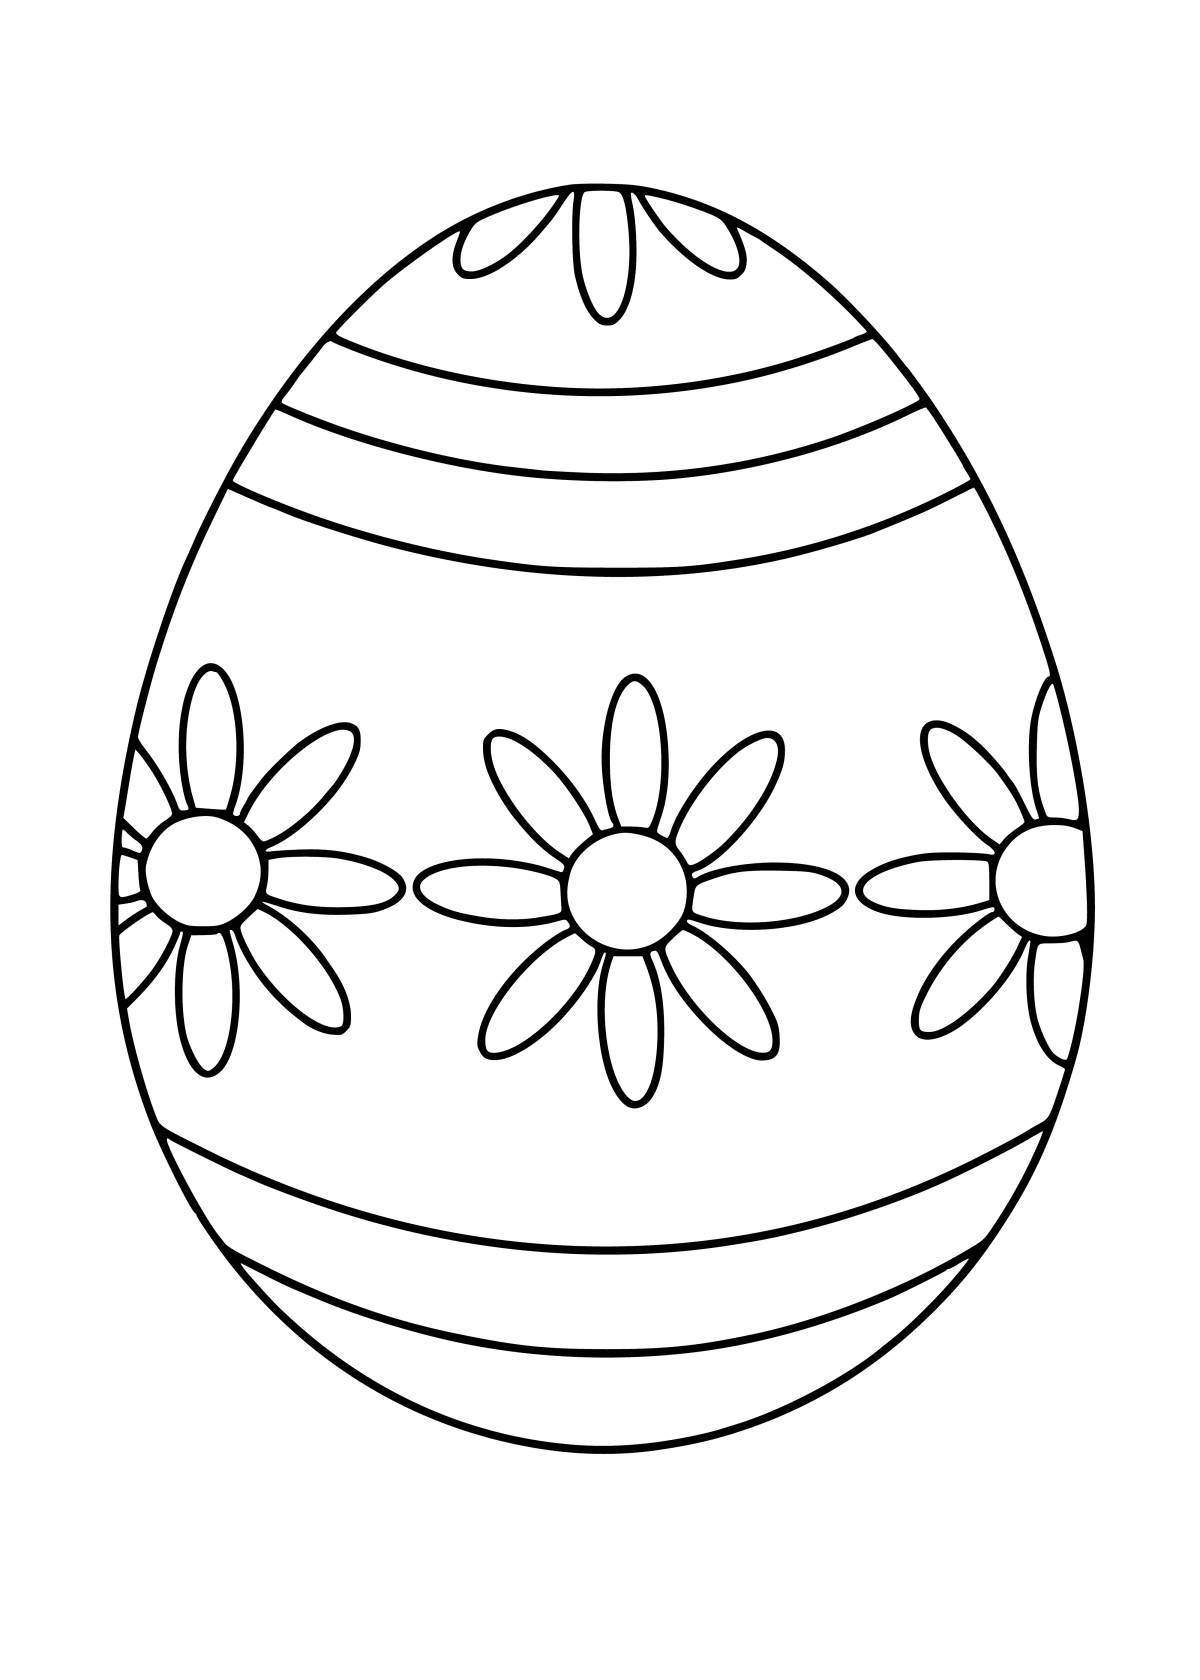 Распечатать раскраску яйца. Пасхальное яйцо раскраска шаблон. Яйцо пасхальное раскраска для детей шаблоны. Раскраски яйца на Пасху для детей. Раскраски пасочных яиц.